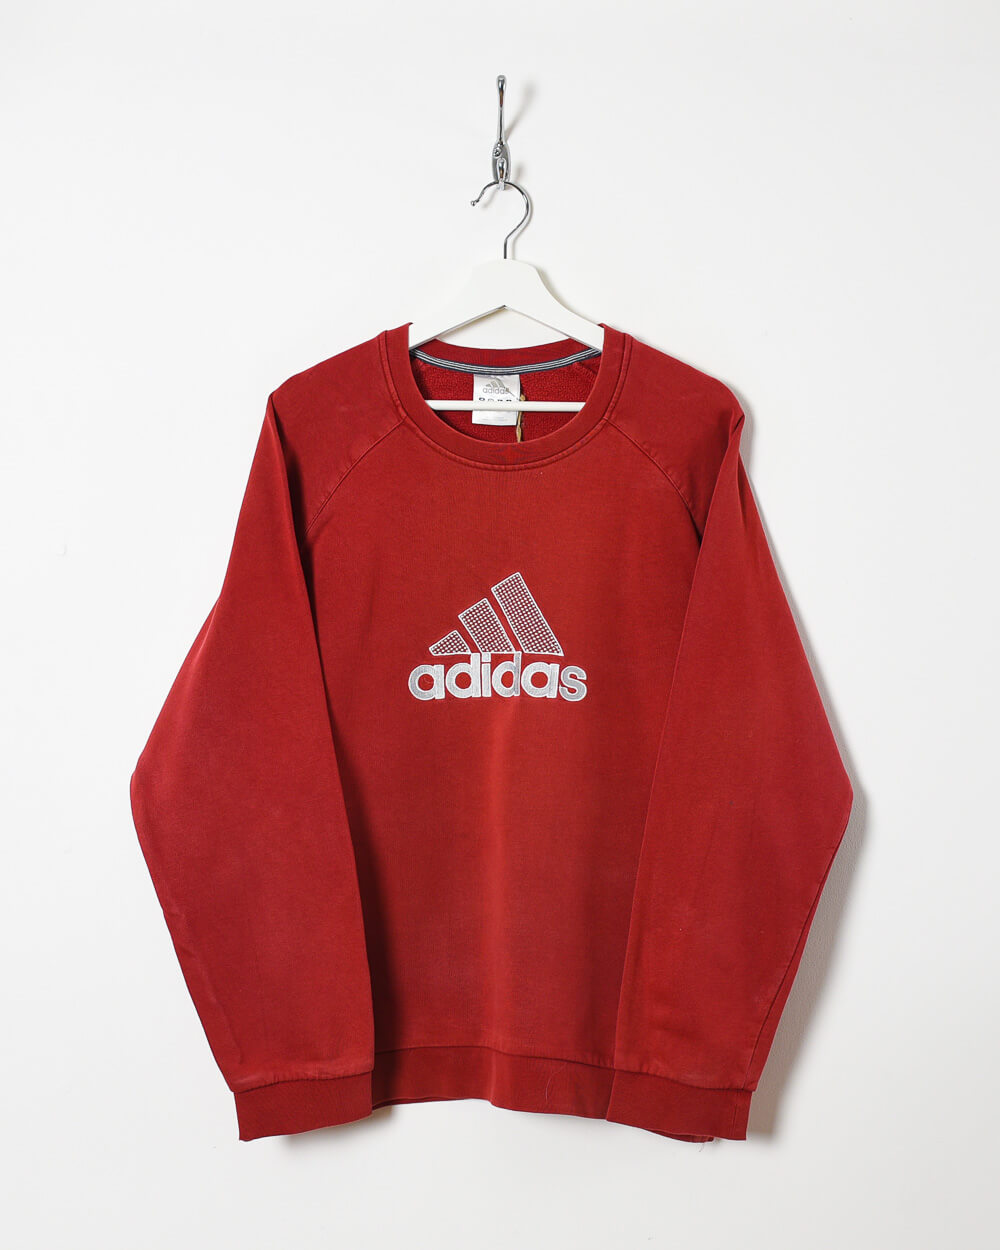 Red Adidas Sweatshirt - Medium